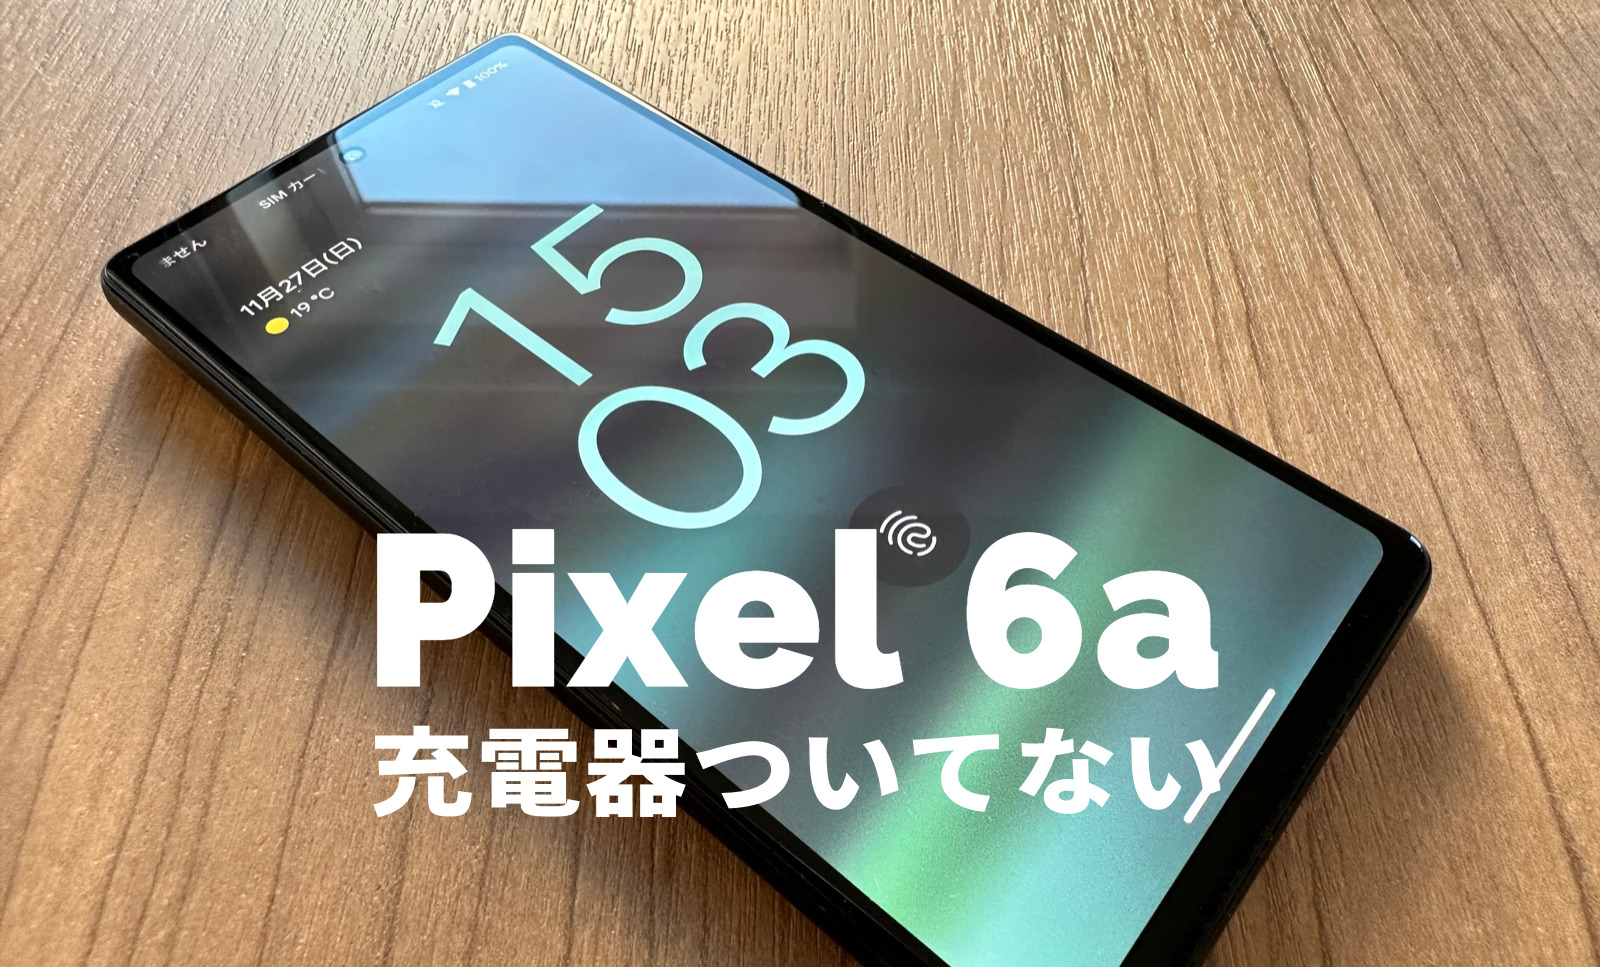 Google Pixel 6aは充電器ついてない&別売りになる？【ピクセル6a】のサムネイル画像